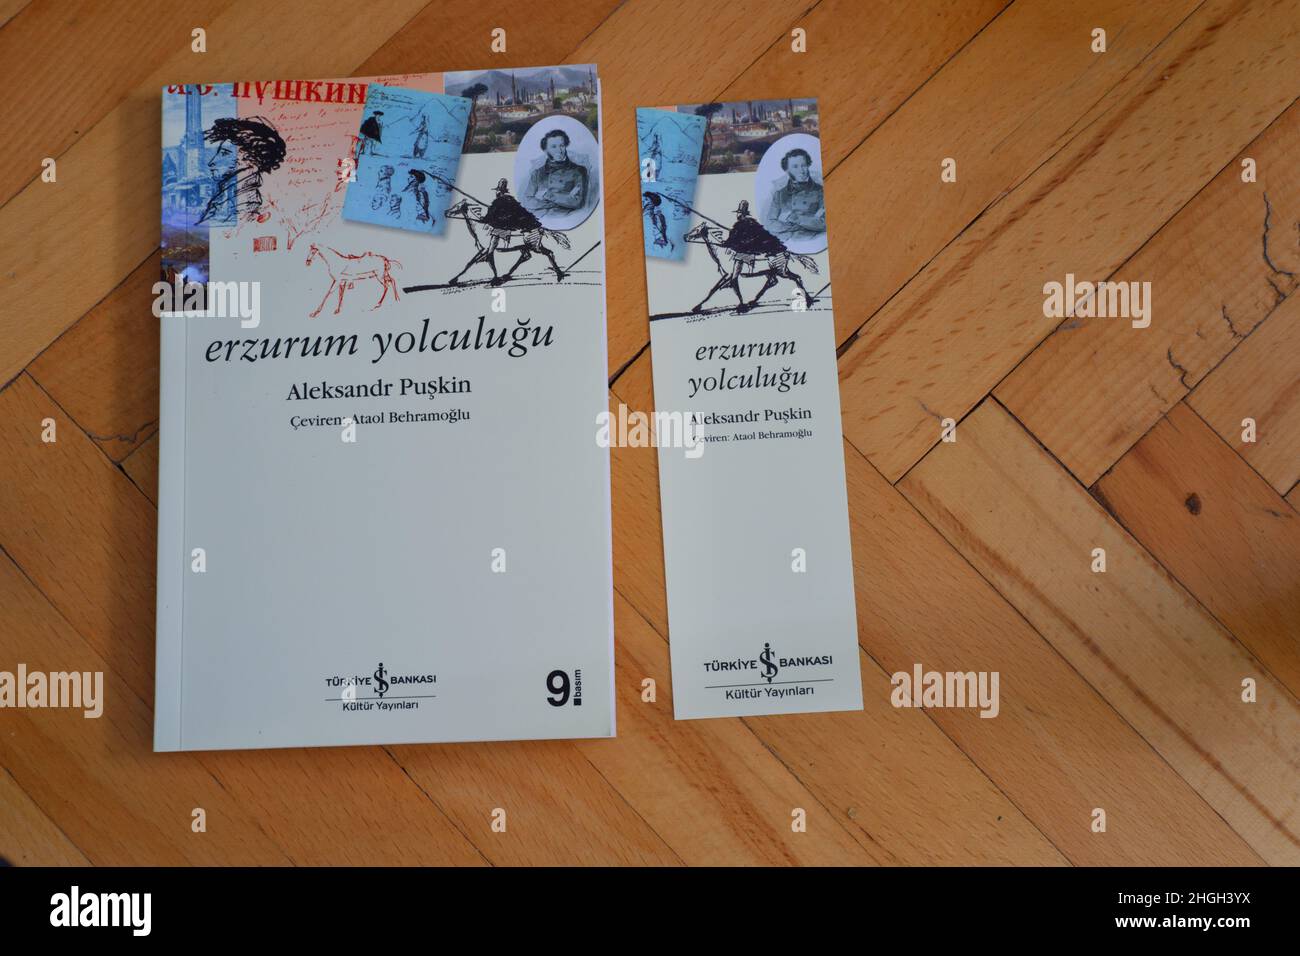 Reisenotizen des berühmten russischen Schriftstellers Alexander Puschkin, die von Ataol Behramoglu von der Isbank Publication in die türkische Sprache übersetzt wurden Stockfoto